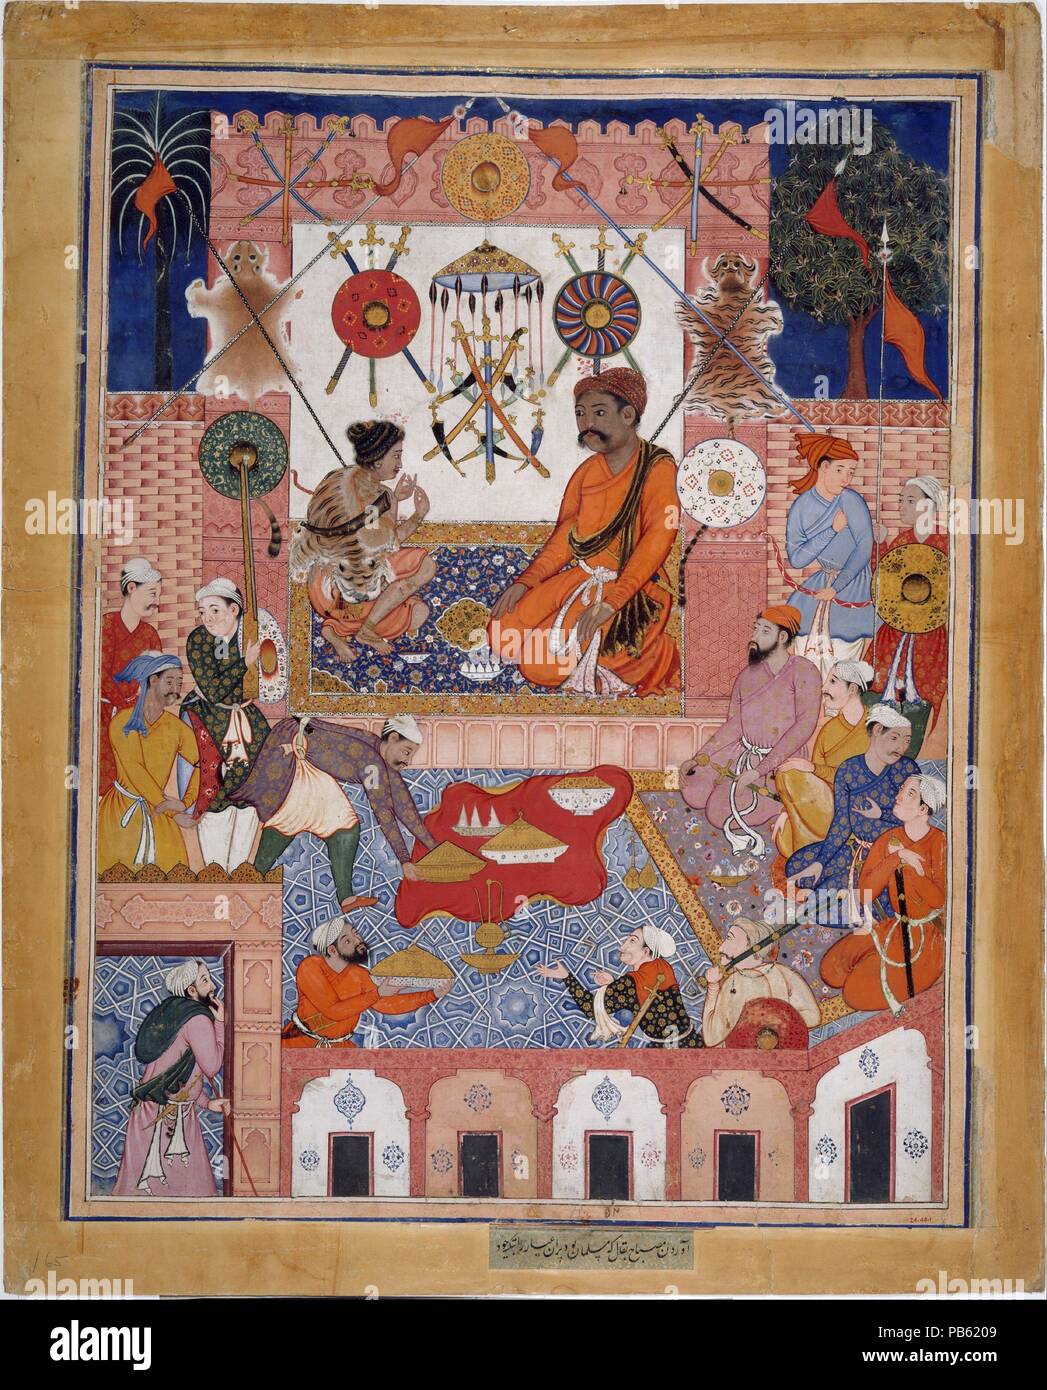 'Misbah la drogheria porta la Spy Parran a casa sua", Folio da un Hamzanama (Le avventure di Hamza). Artista: attribuito a Dasavanta; attribuita a Mithra. Dimensioni: H. 27 7/8 in. (70,8 cm) W. 21 5/8 in. (54,9 cm). Data: ca. 1570. Il Hamzanama racconta le avventure di Hamza, uno zio del Profeta Maometto che era un leggendario difensore della fede. Questo dipinto mostra Misbah sulla destra e Parran sulla sinistra come essi trama per il soccorso di Hamza rapito il figlio. Esso proviene da un multivolume, copia su larga scala del testo realizzato per l'imperatore Akbar, che ha preso circa quindici anni per Foto Stock